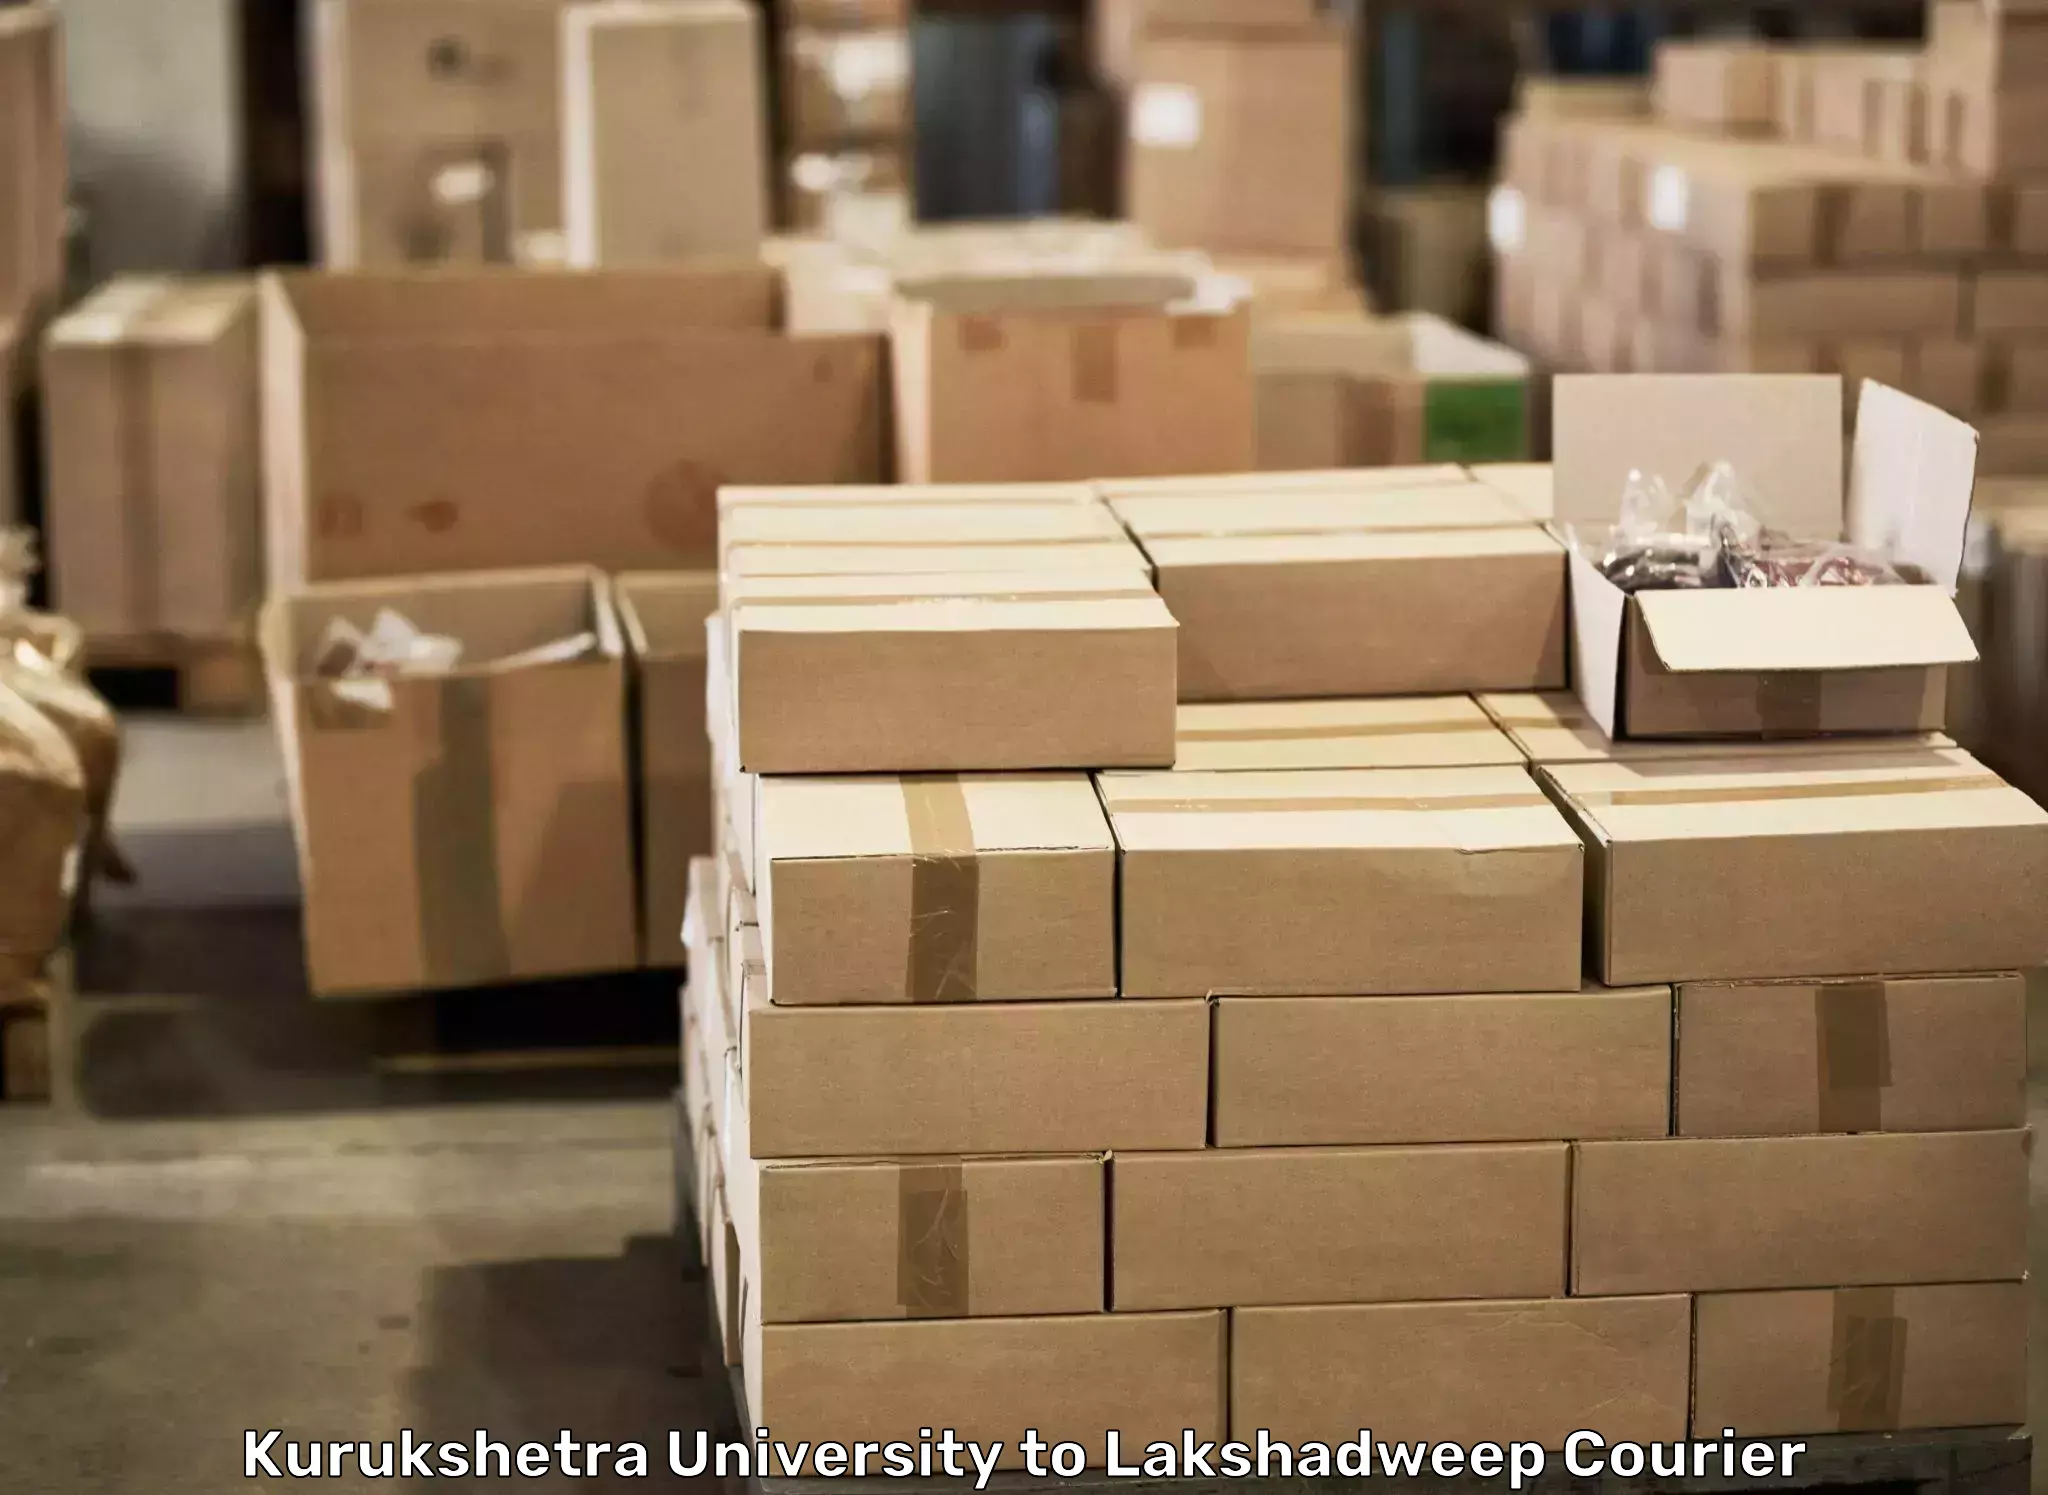 Efficient furniture transport in Kurukshetra University to Lakshadweep